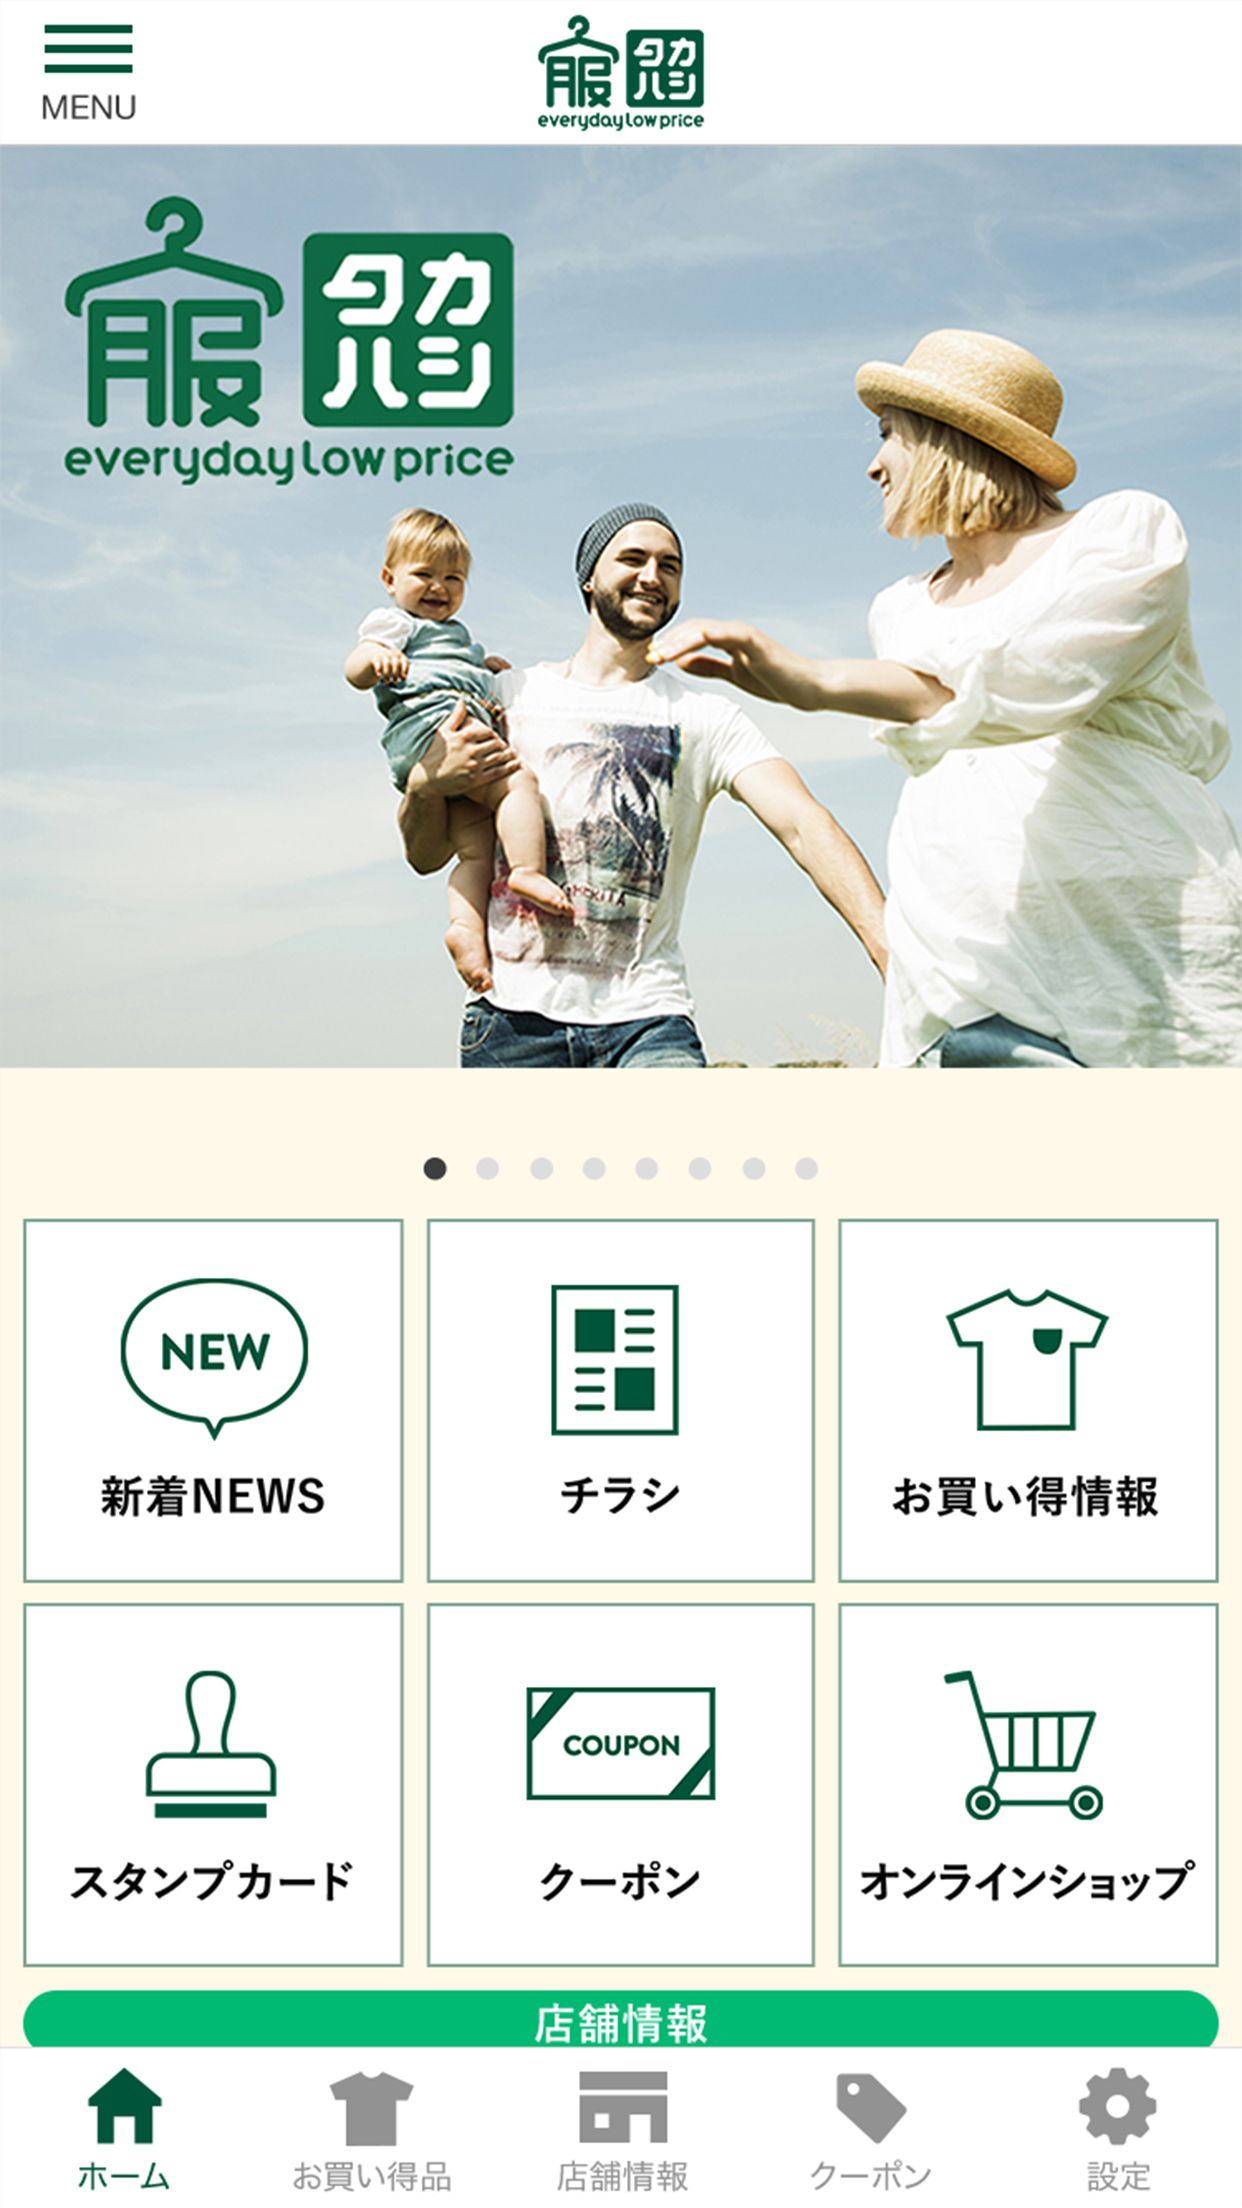 株式会社 タカハシの公式アプリ